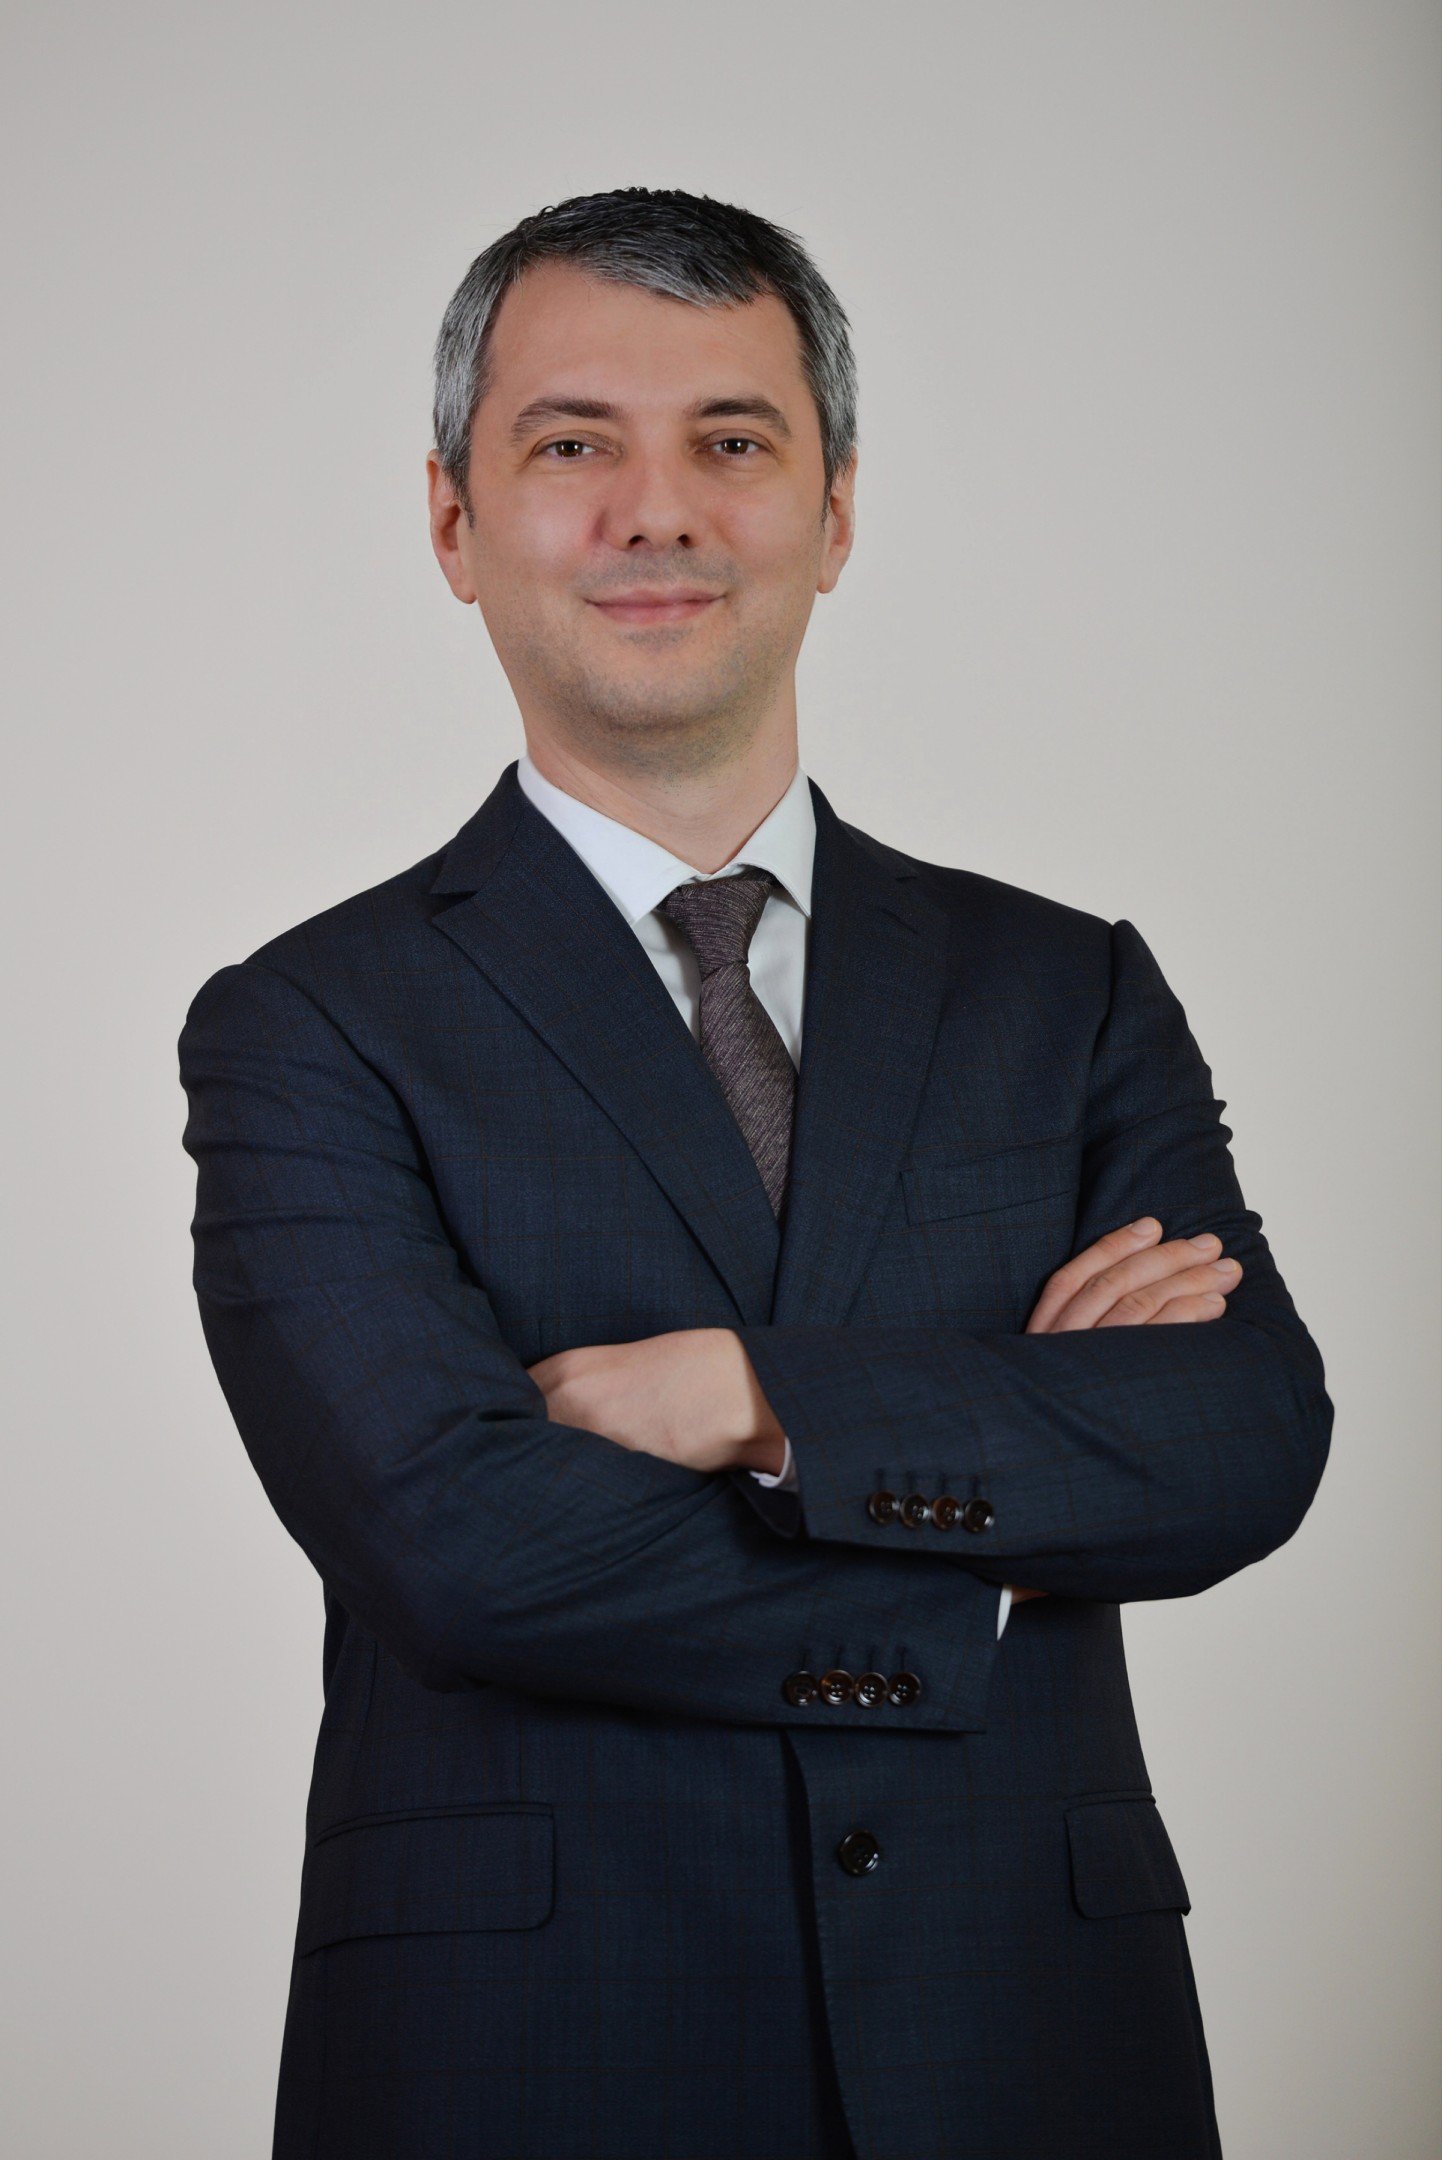 Penta Teknoloji Genel Müdürü Fatih Erünsal